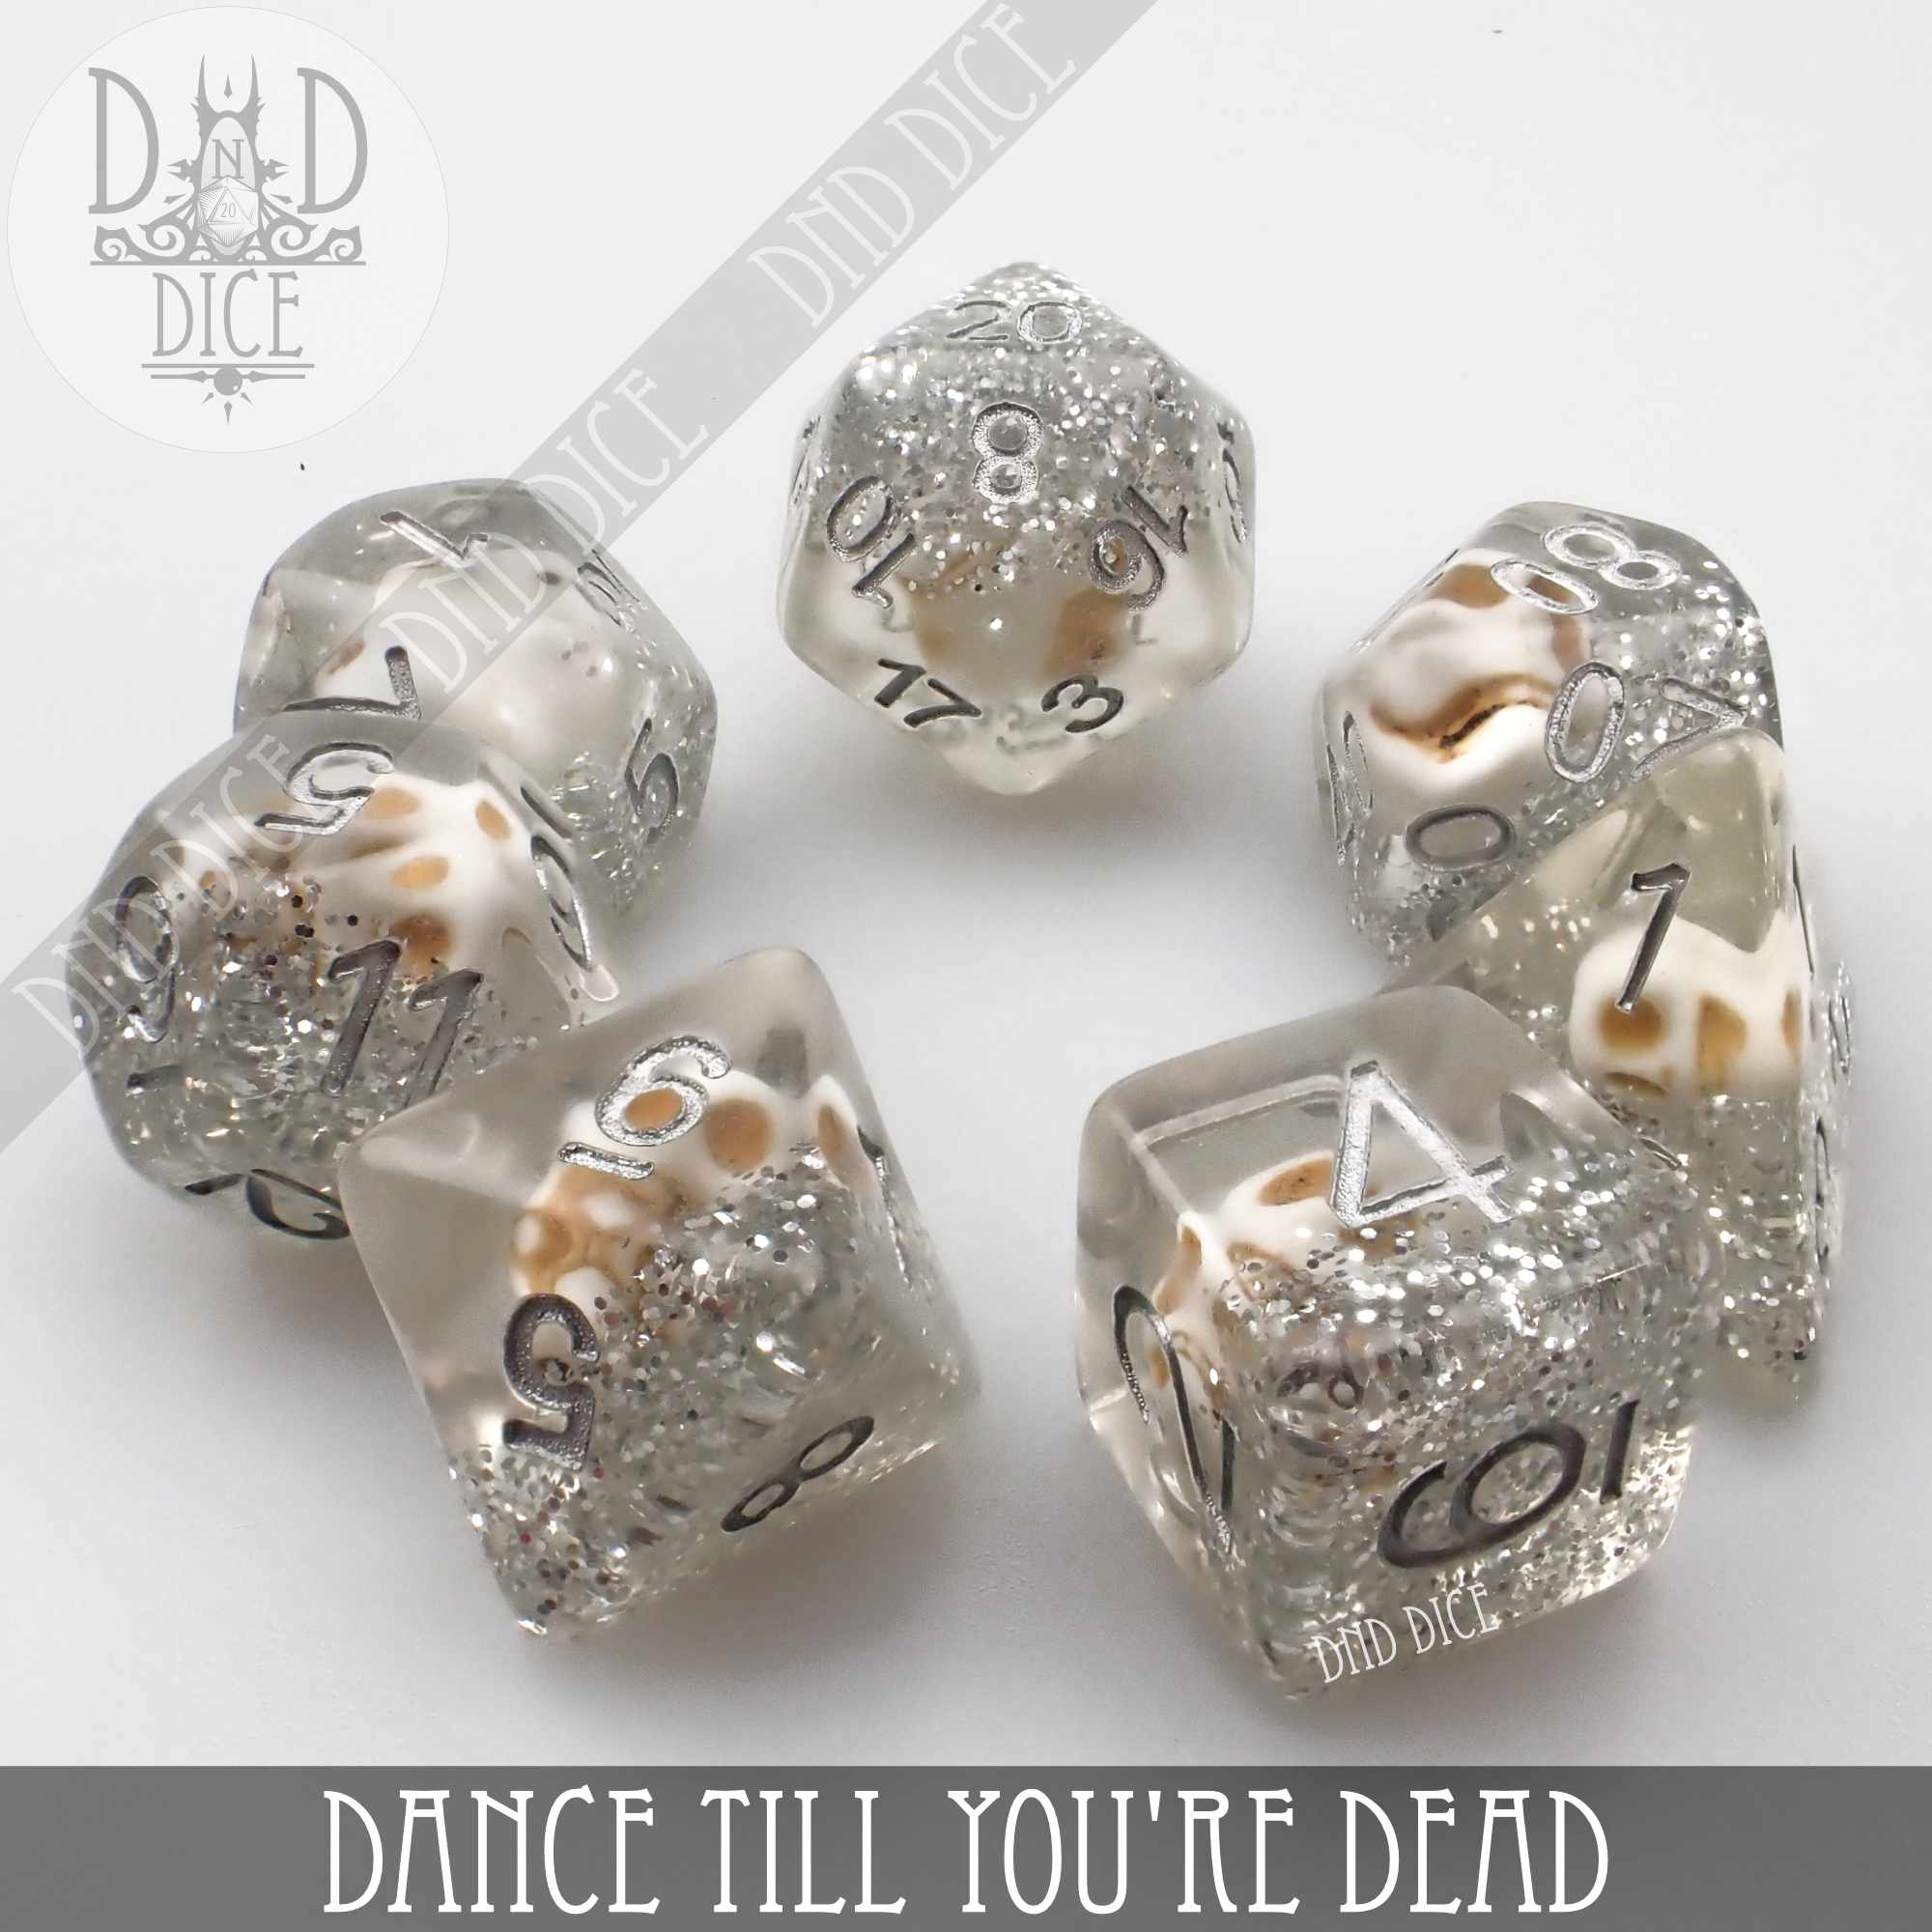 Dance Till You're Dead Dice Set